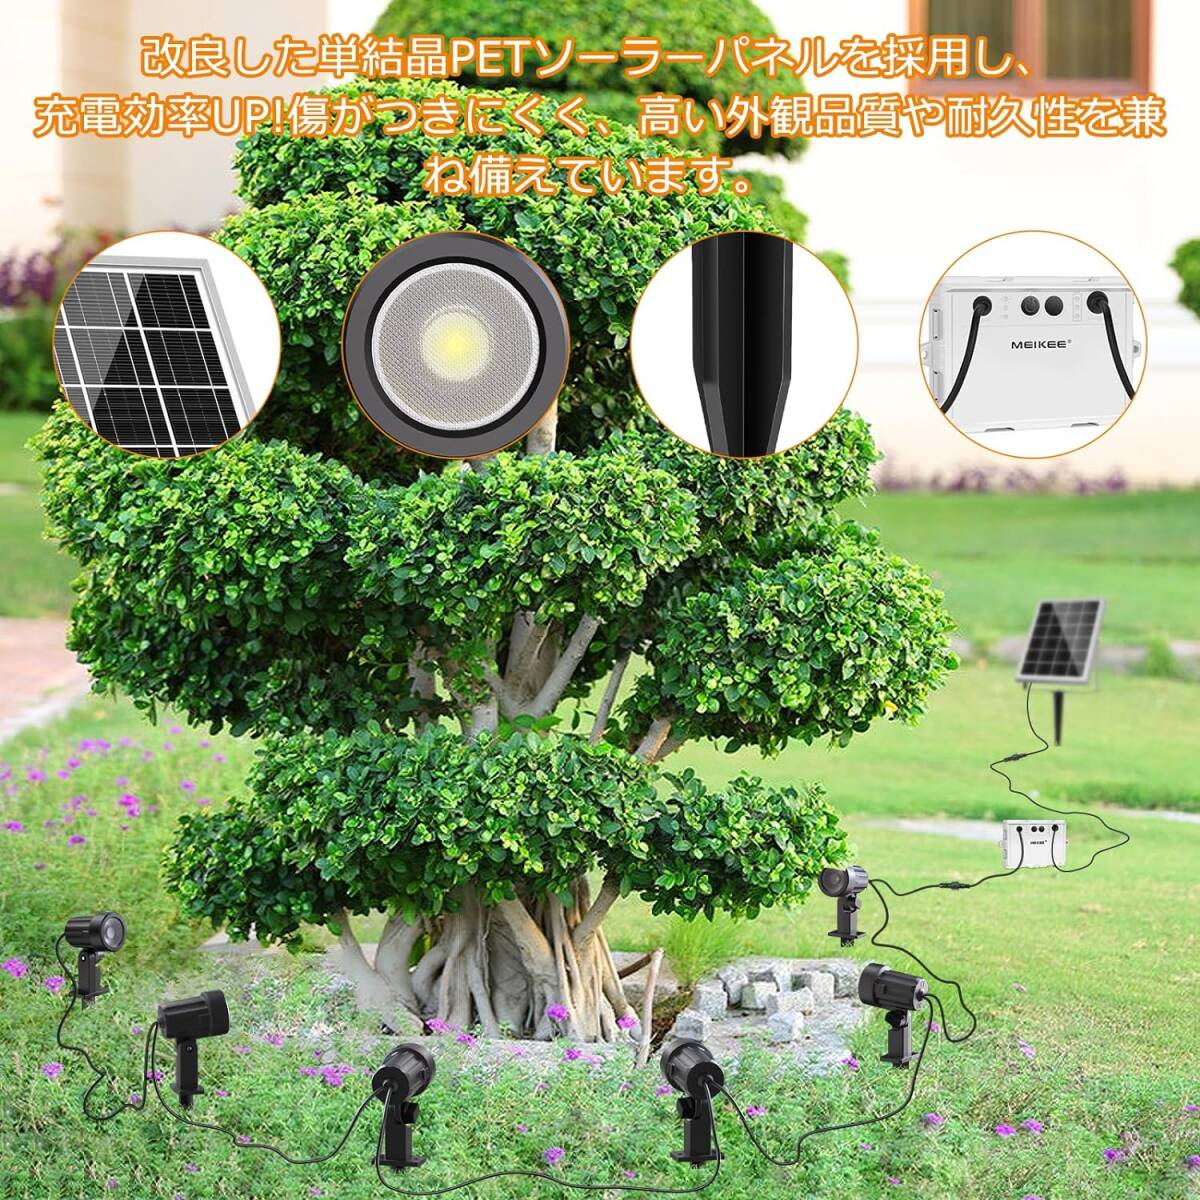 MEIKEE 6灯ソーラー ガーデンライト【リモコン付き】ソーラーライト屋外 スポットライト おしゃれ ソーラー充電 分離式 庭園_画像7